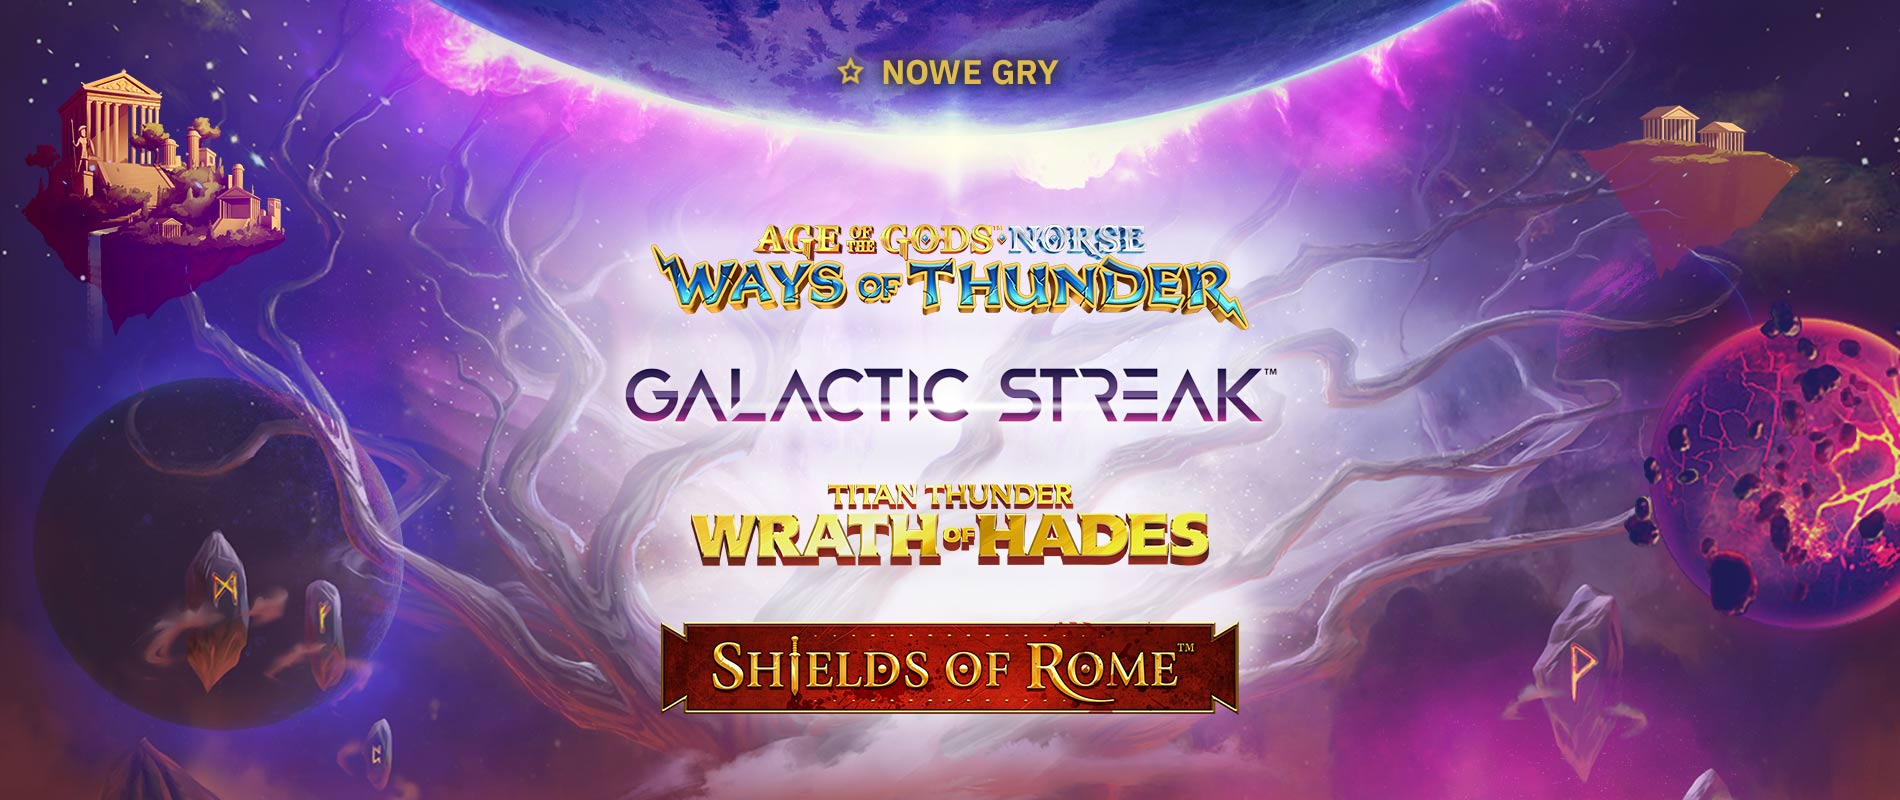 Premiärer på Total Casino: Age of the Gods, Galactick Streak, Shields of Rome, Titan Thunder